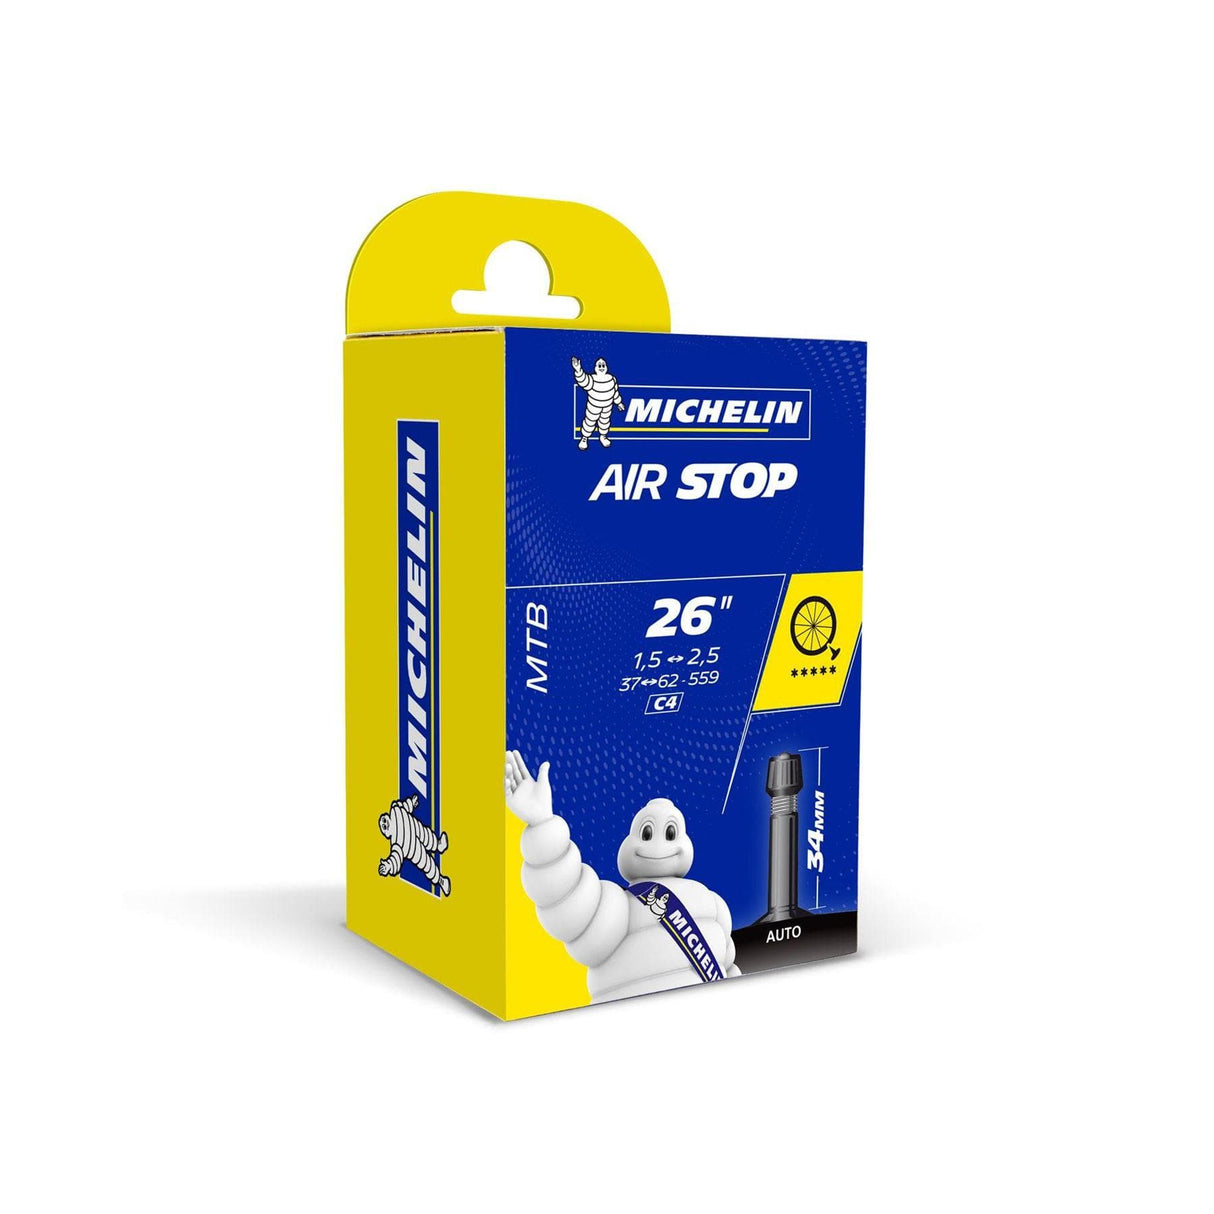 Michelin Airstop MTB Schrader Valve Inner Tube - 26" x 1.4-2.5"